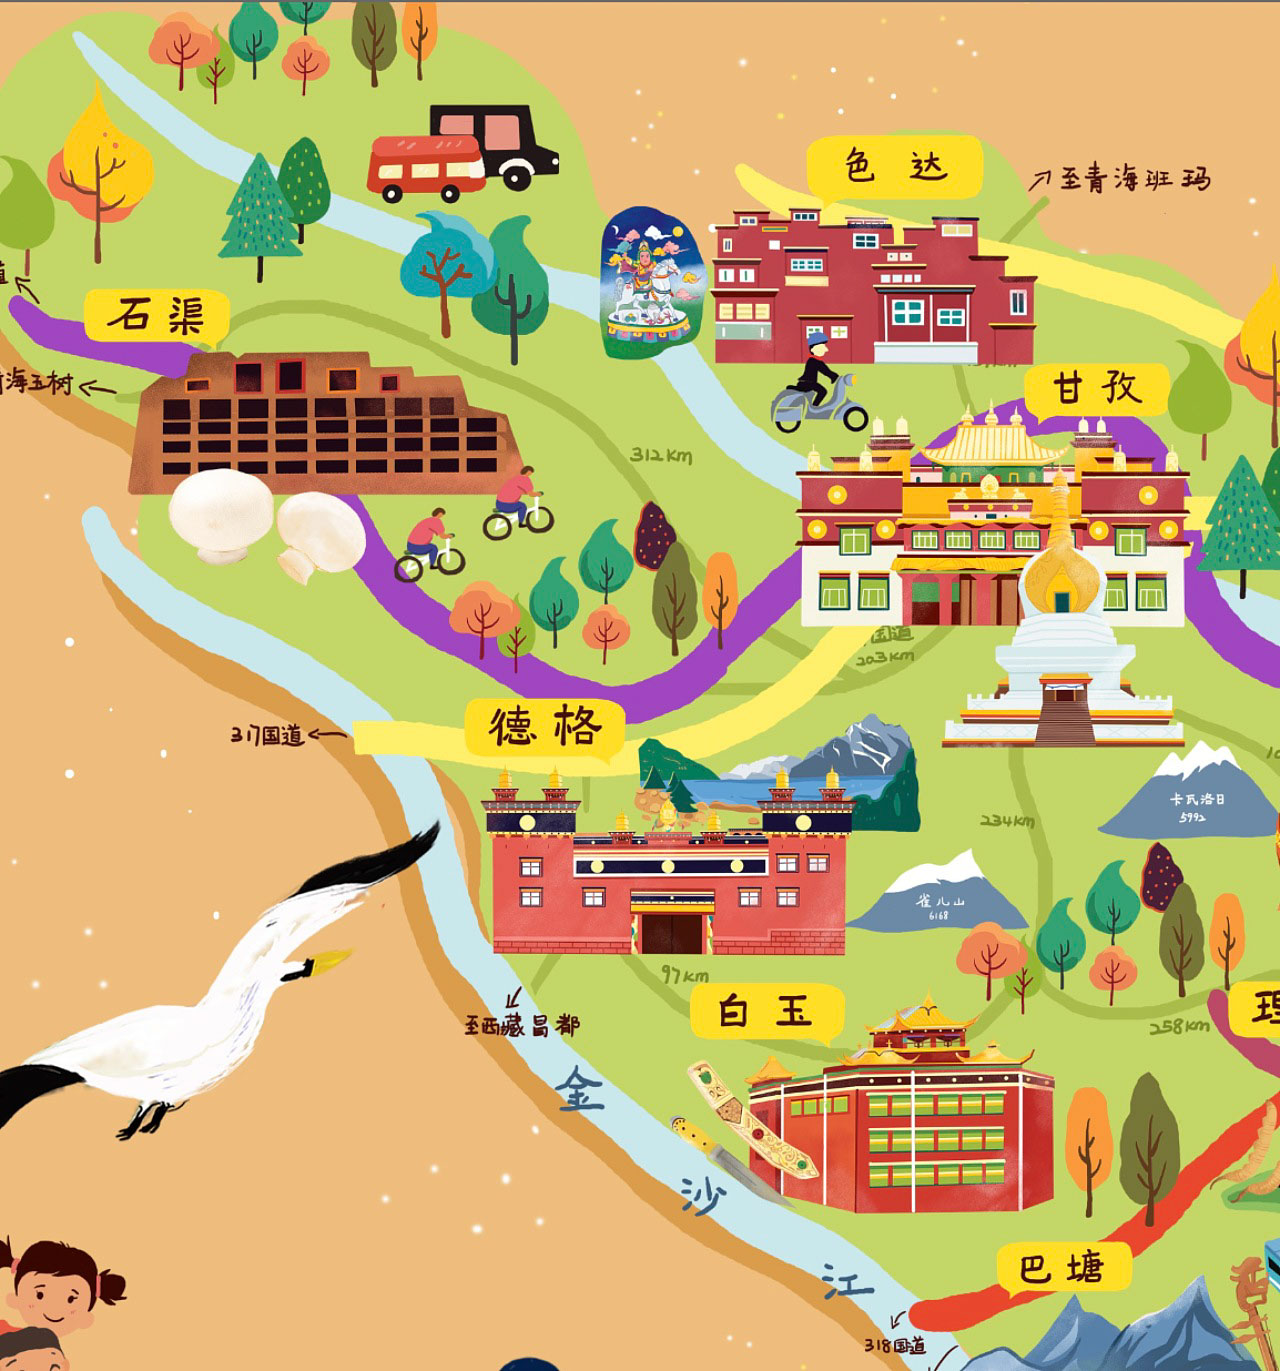 道滘镇手绘地图景区的文化宝库